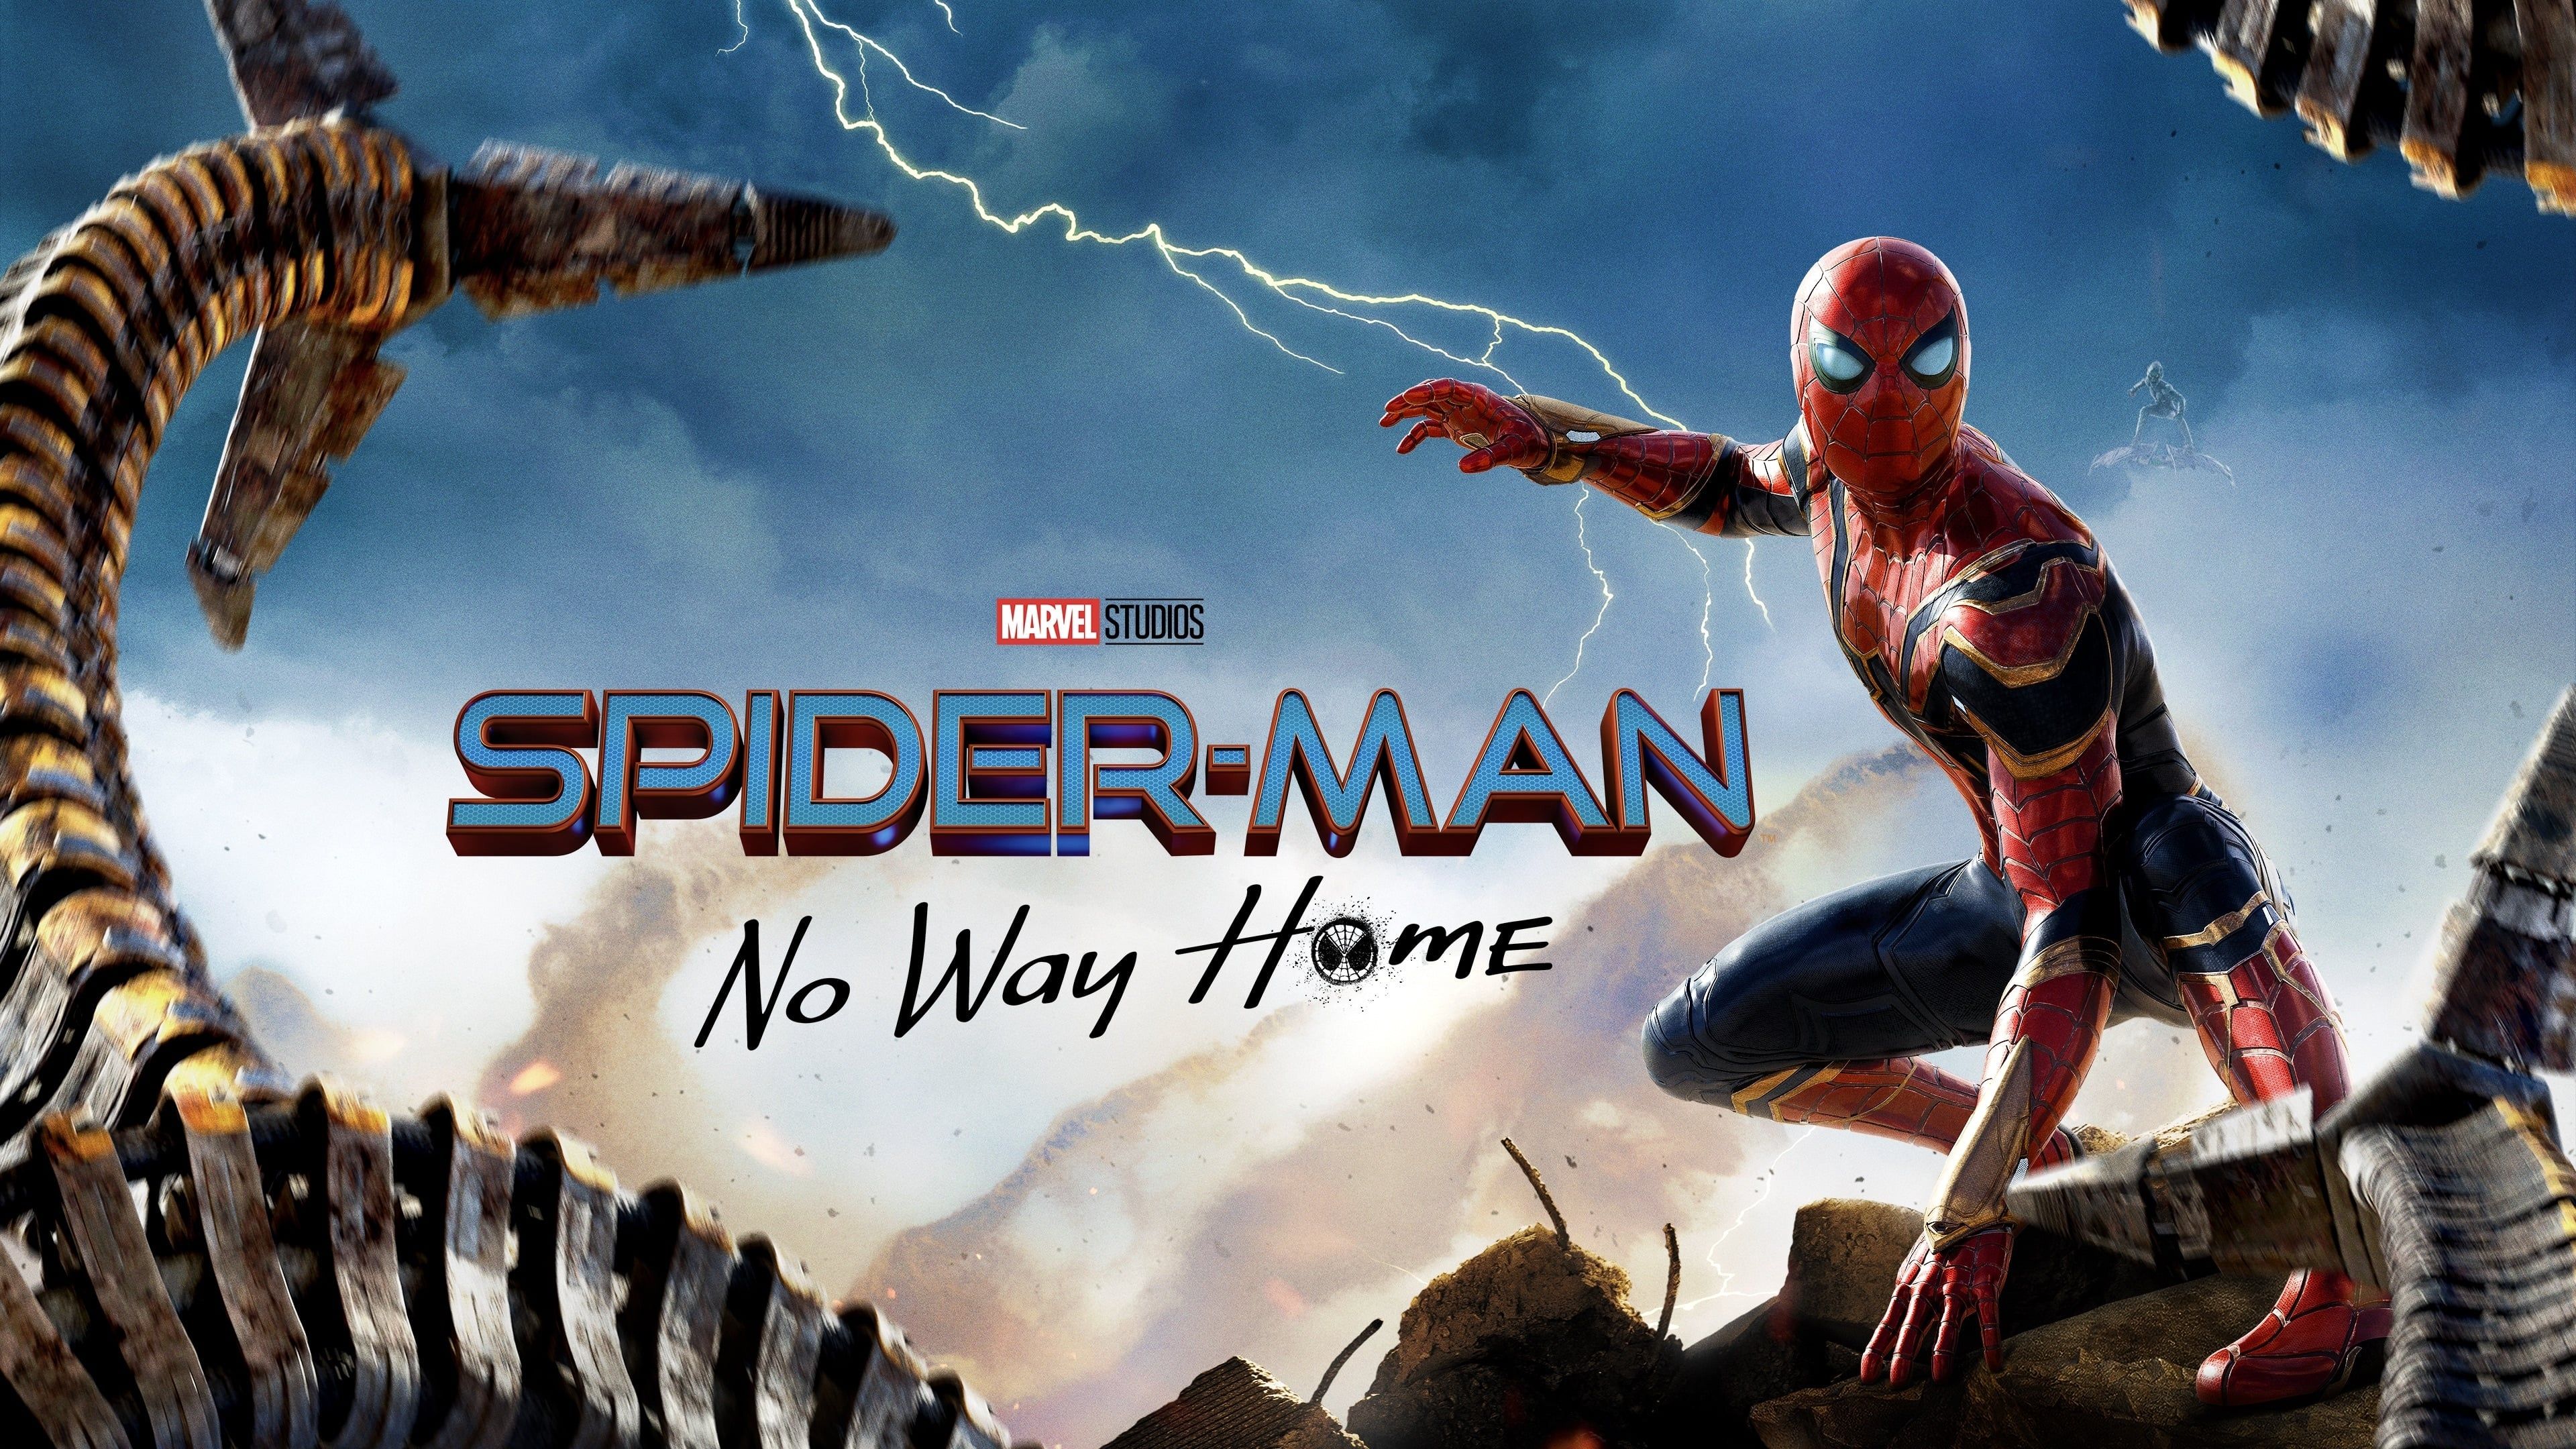 spider-man no way home full movie free download filmyzilla